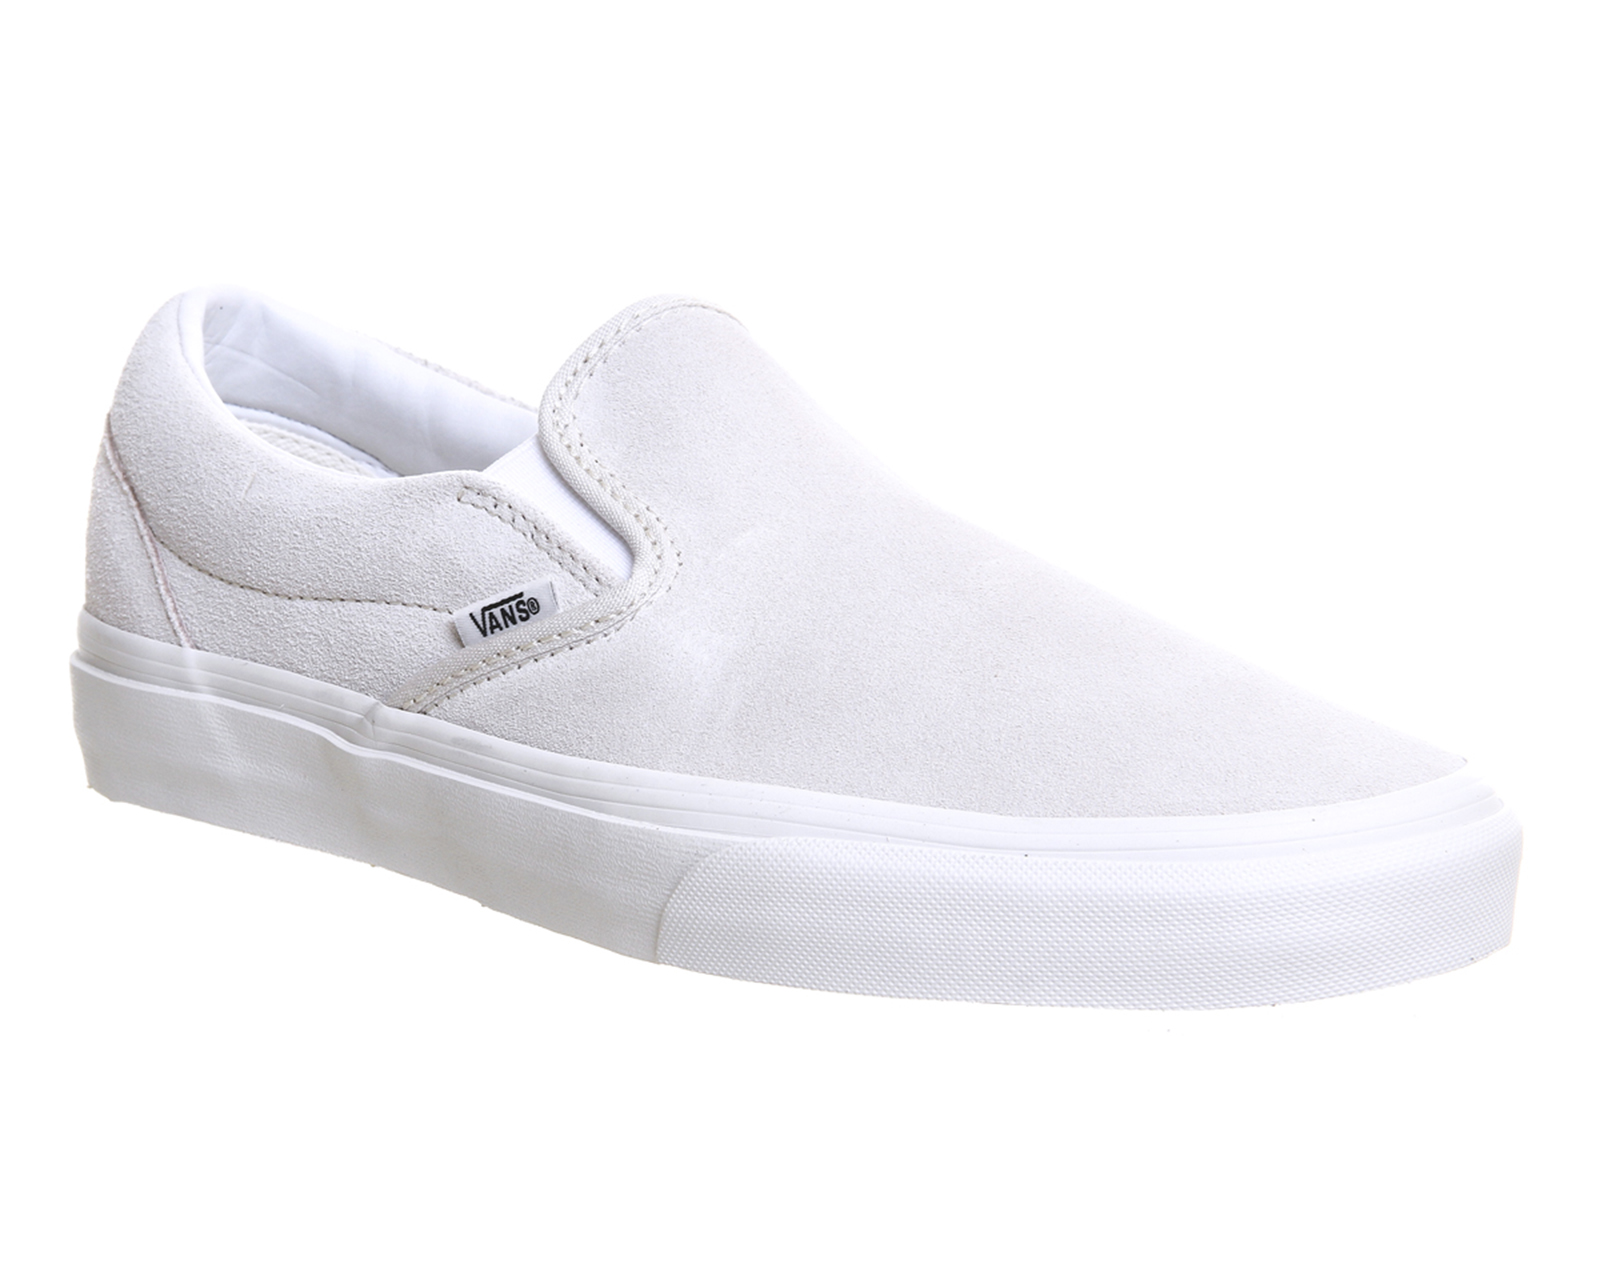 VansClassic Slip On ShoesVintage White